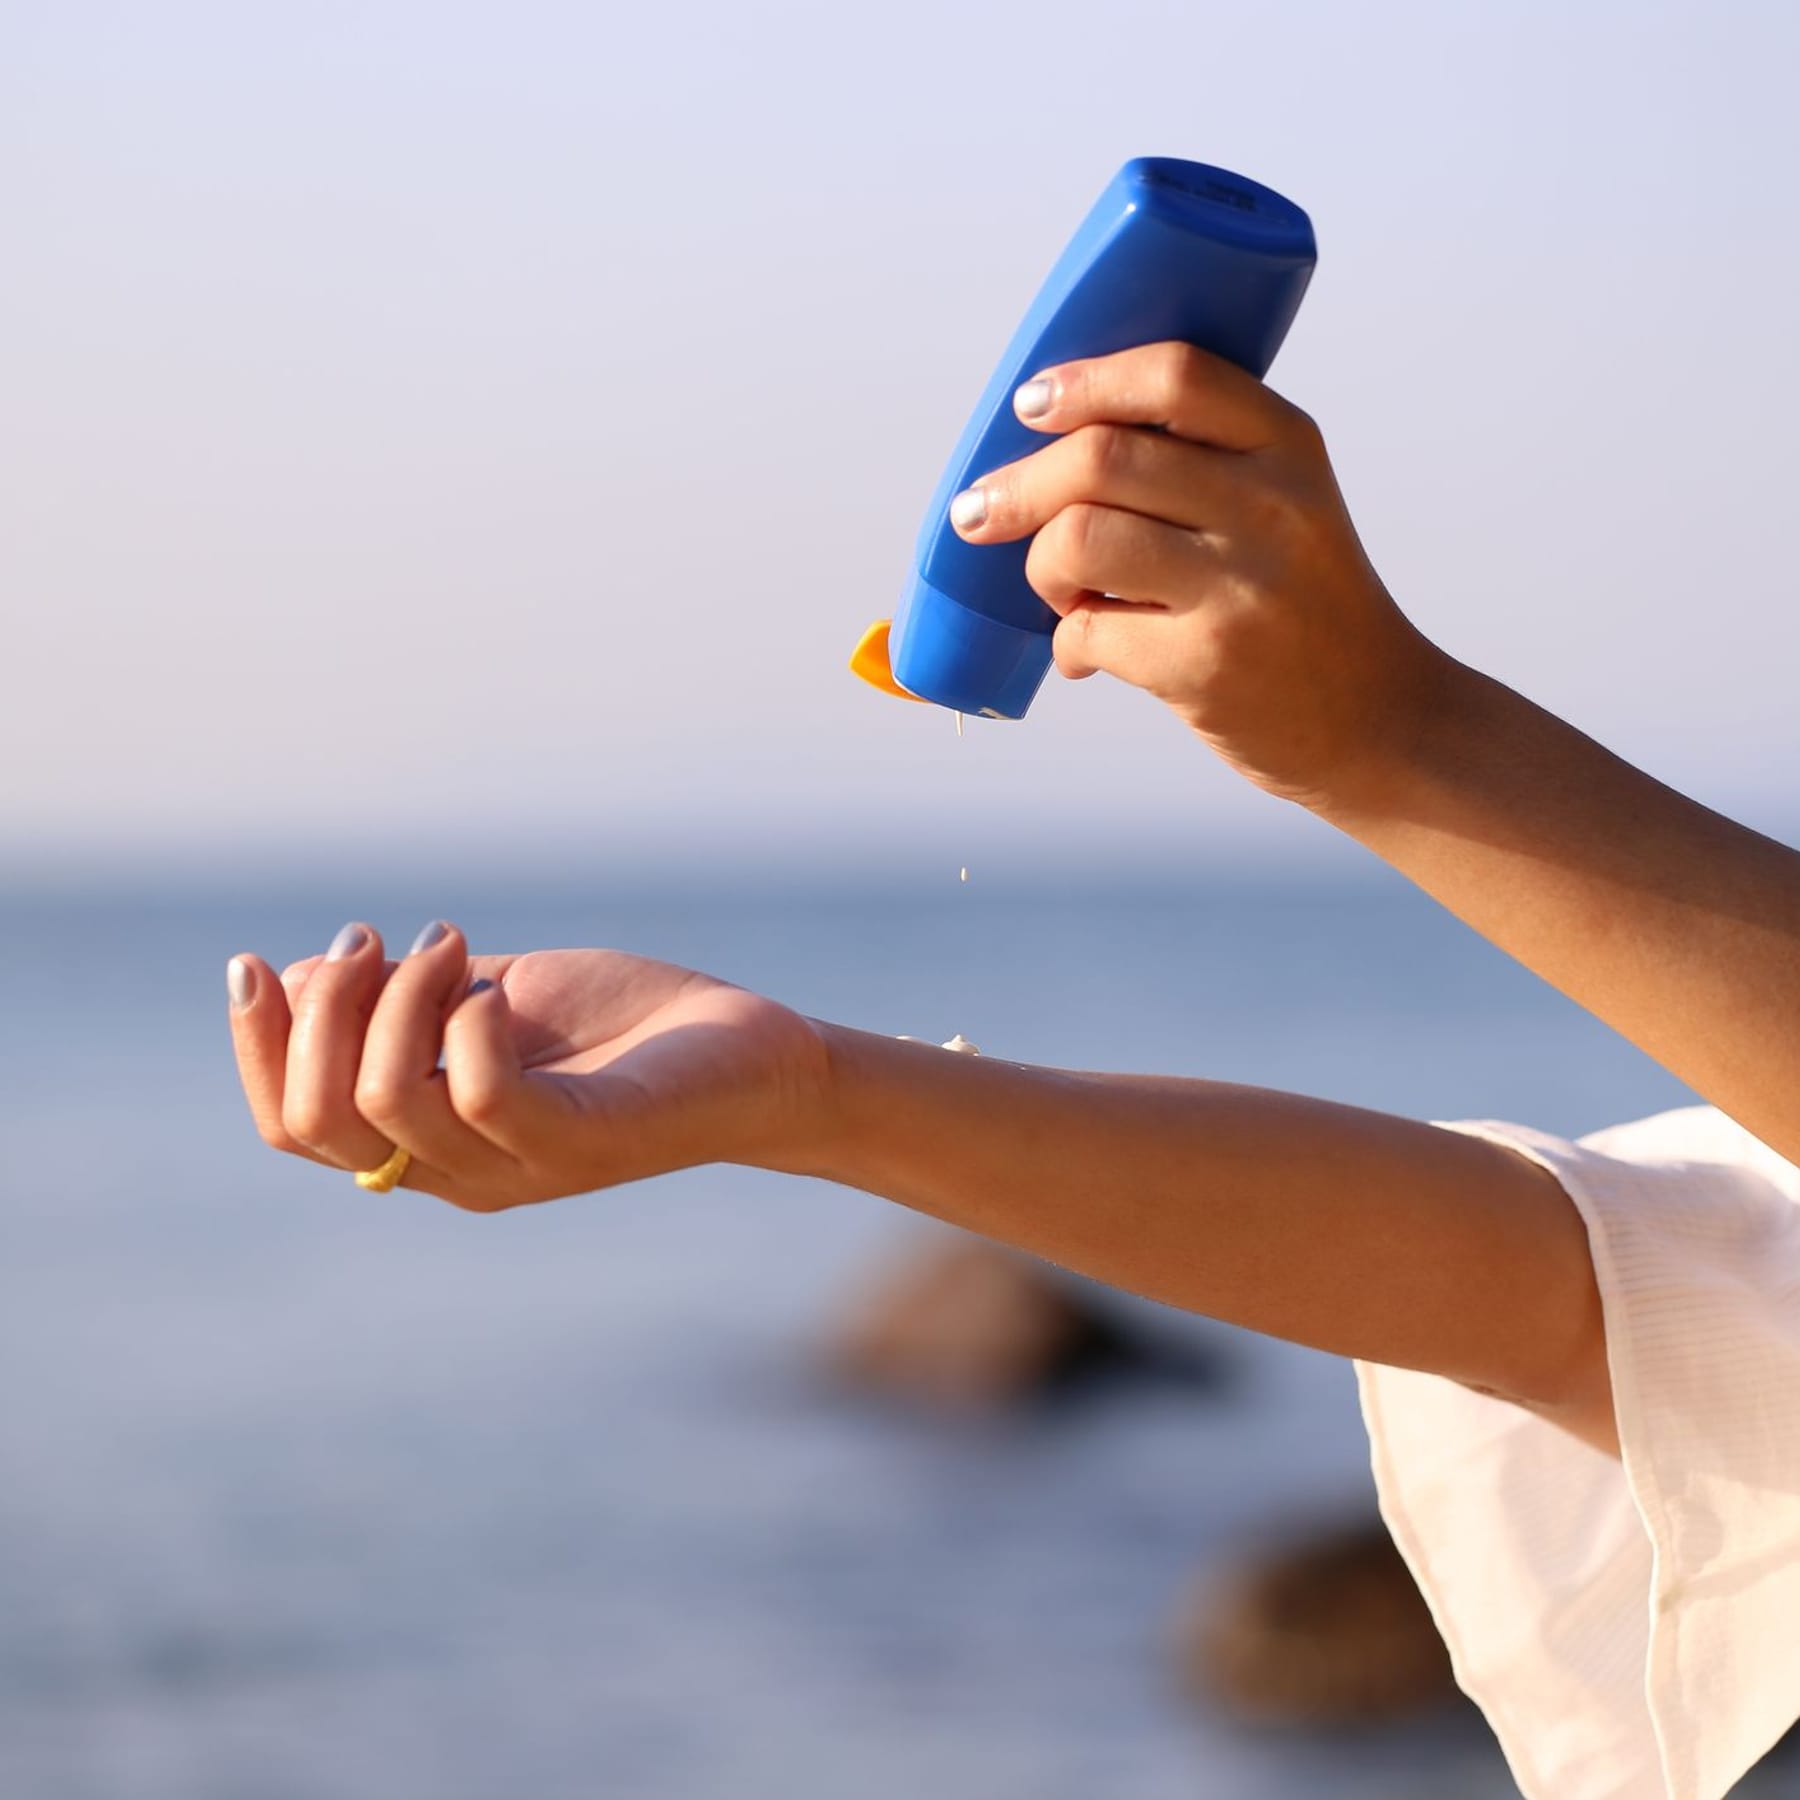 Sensitive Sonnencreme: Öko-Test prüft Sonnenschutz für empfindliche Haut